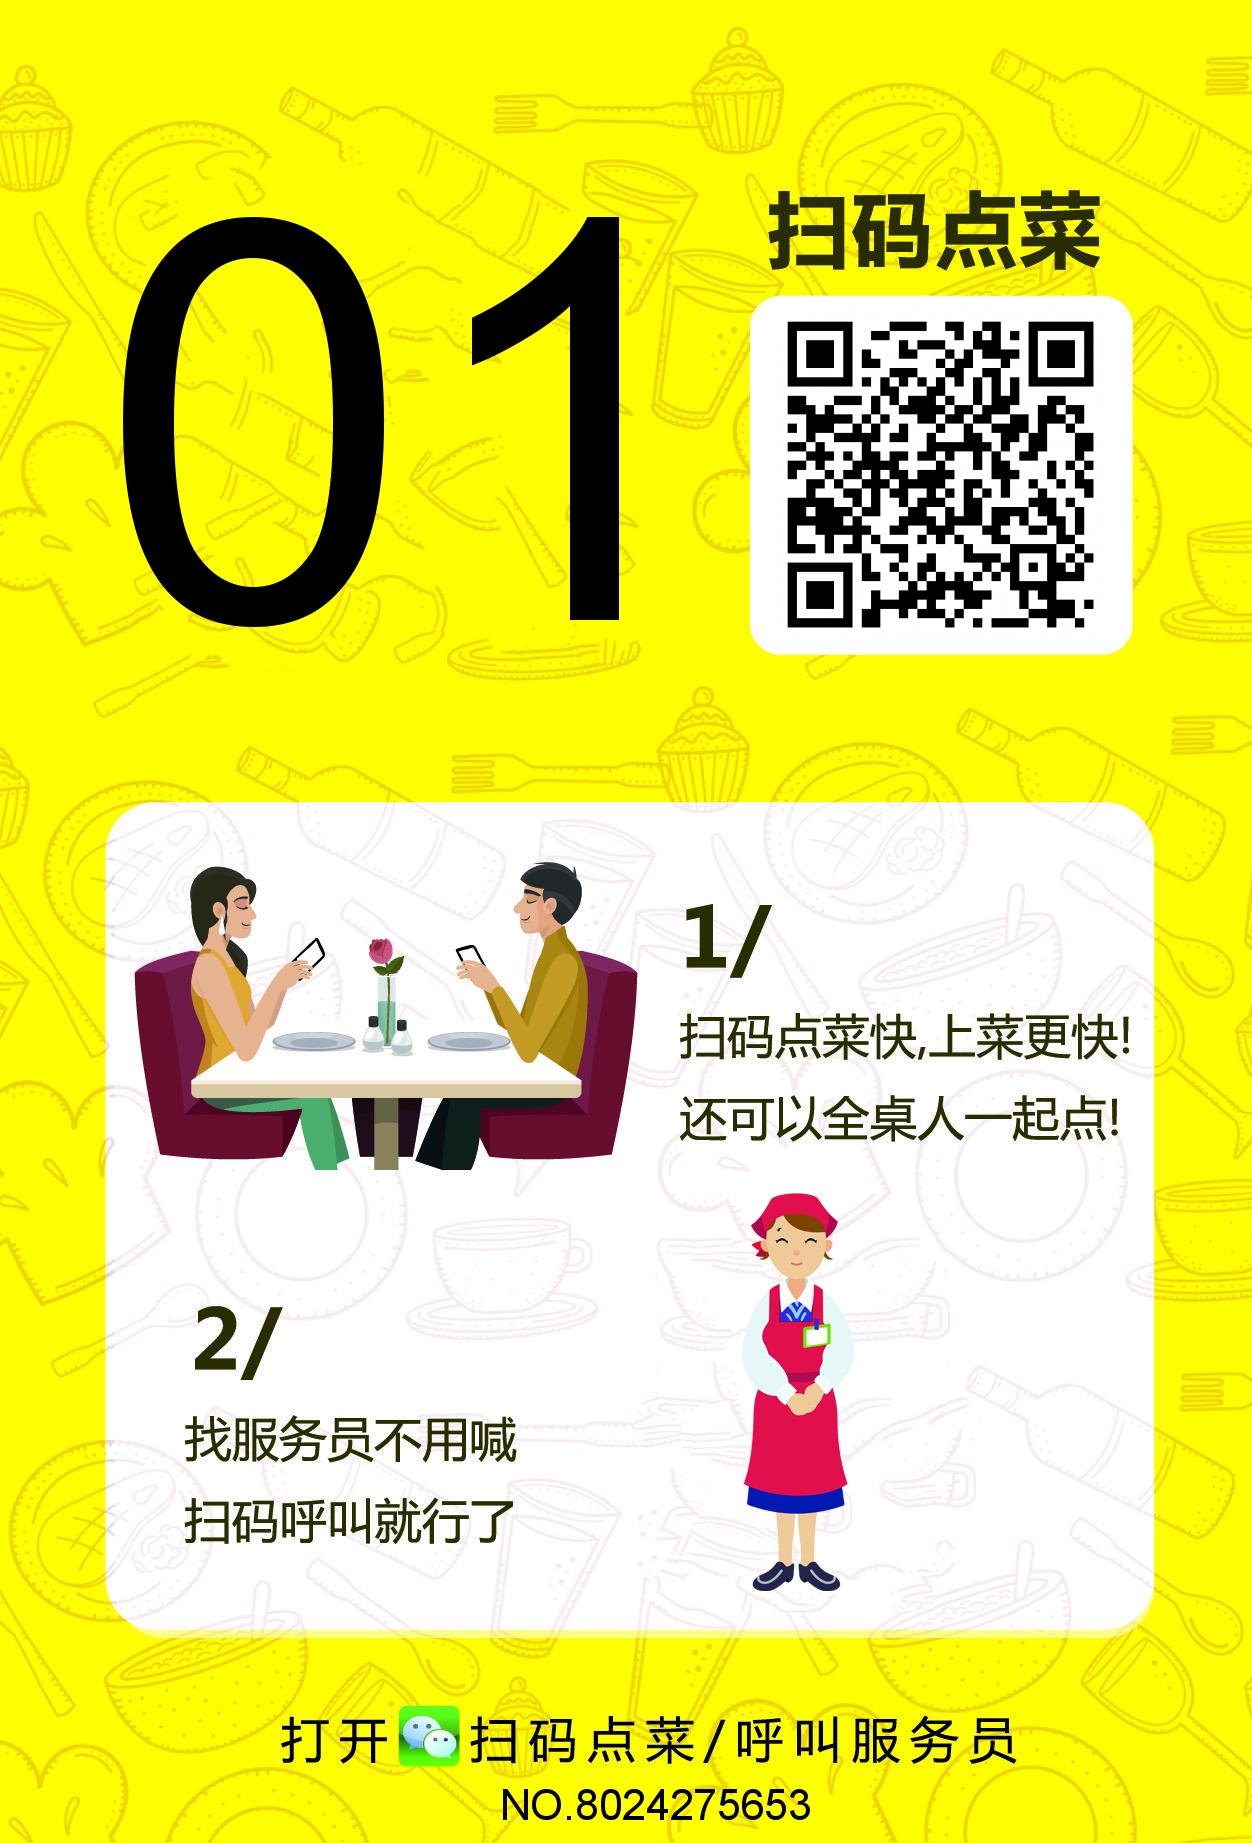 新概念微信点餐系统哪家好_酒店点餐系统相关-深圳市中贤在线技术有限公司